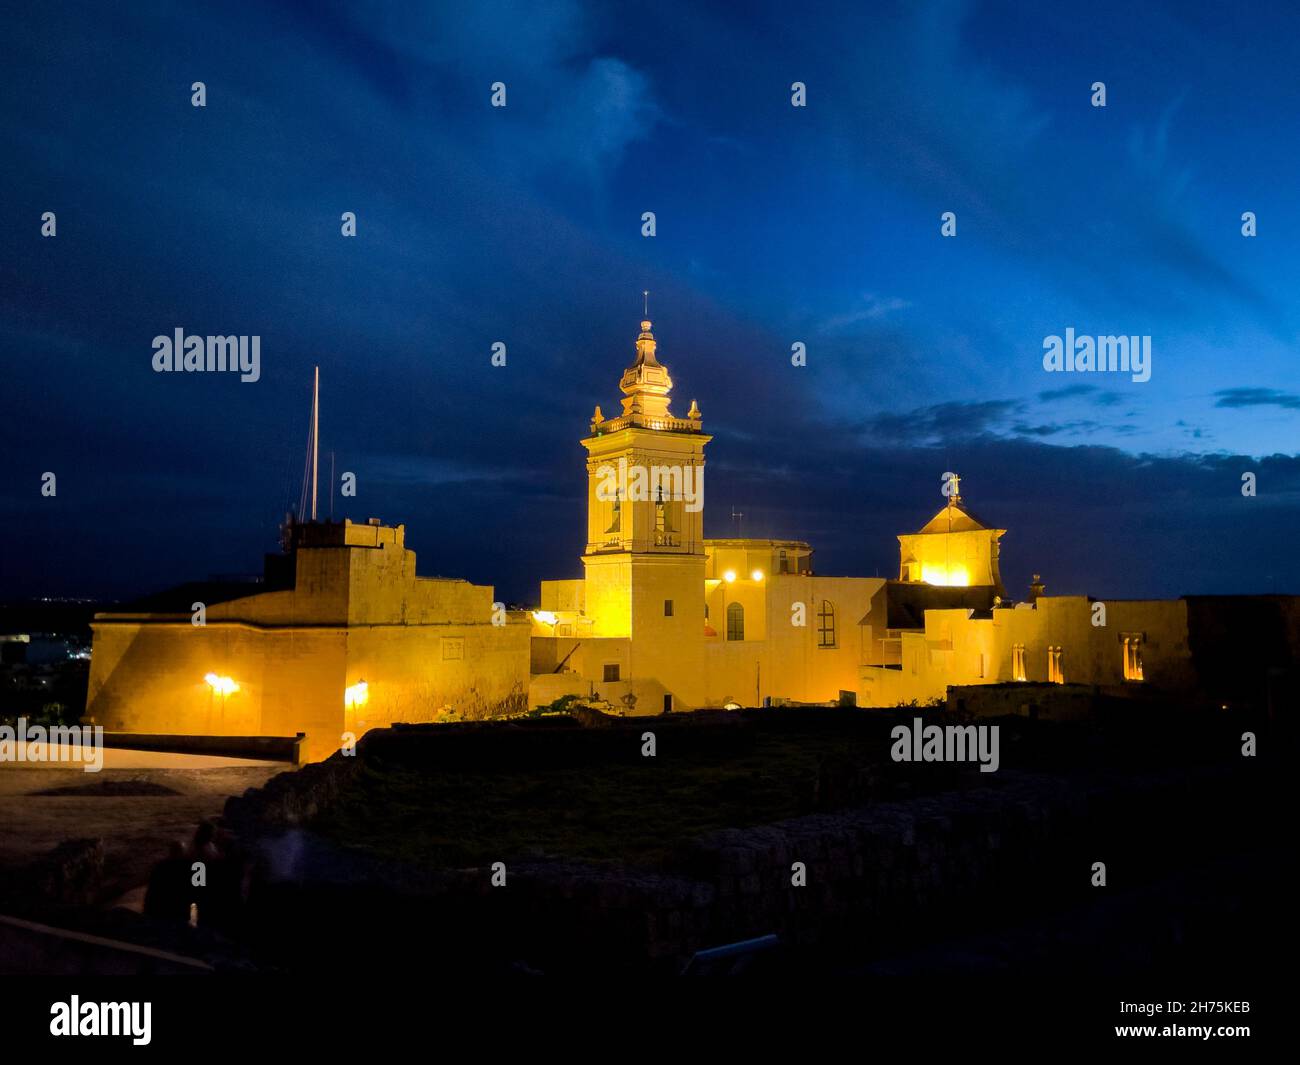 Beleuchtete St. Joseph's Chapel und Kathedrale in Zitadelle von Gozo bei Dämmerung in blaue Stunde, Ir-Rabat Għawdex, Victoria, Gozo, Malta Stock Photo